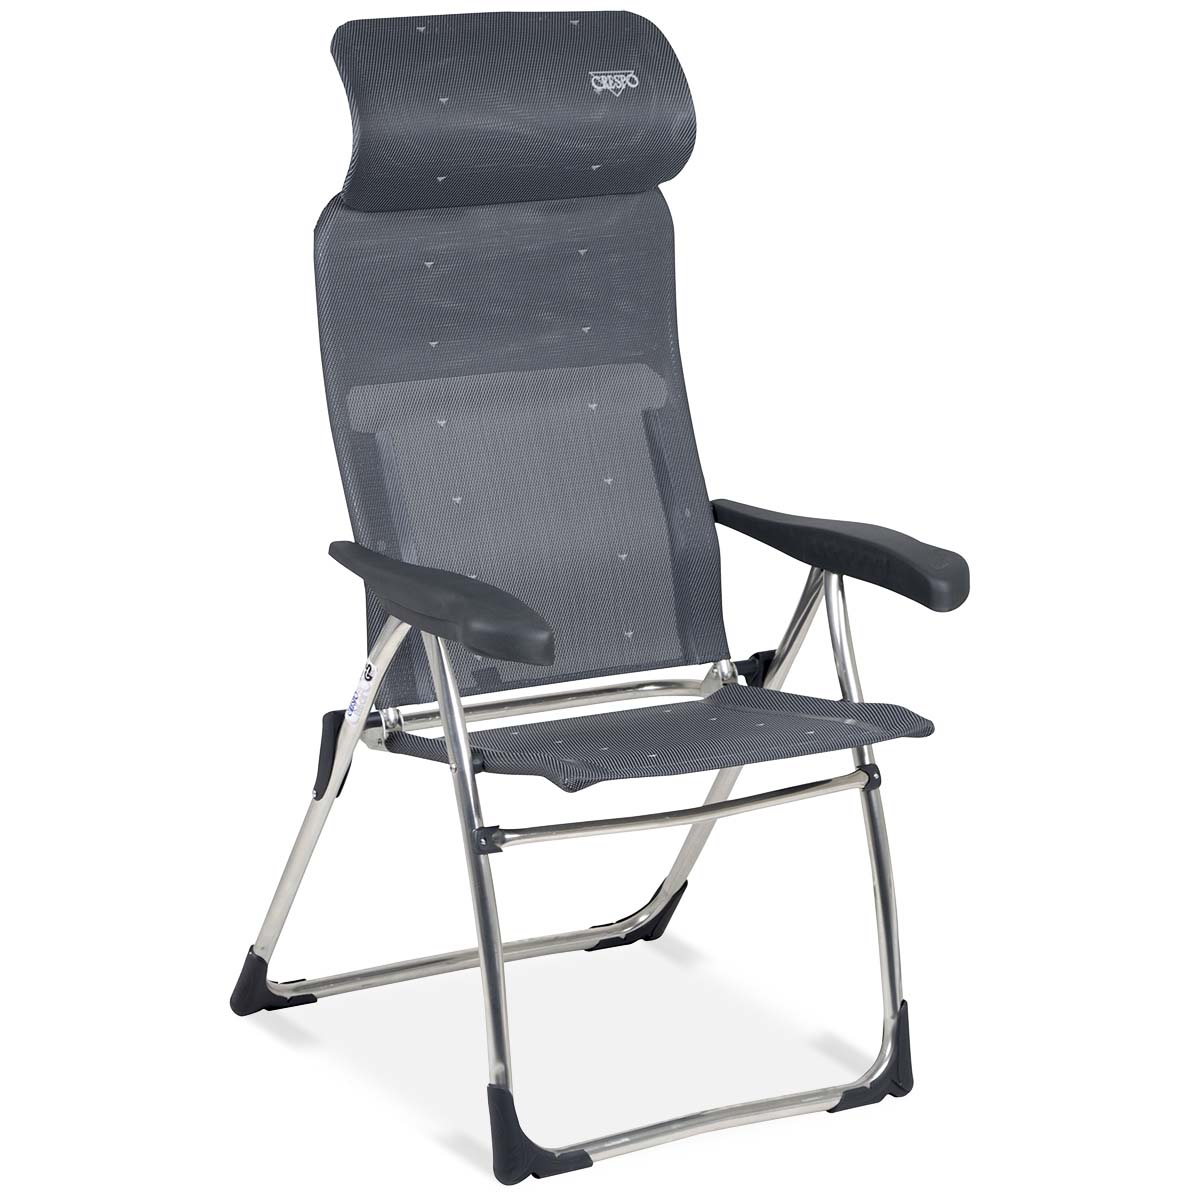 1104963 Een lichtgewicht en extra compacte standenstoel. Deze stoel biedt maximaal comfort door de in 7 standen verstelbare rugleuning en een traploos verstelbare hoofdsteun (ruglengte: 65-83 cm). De rugleuning, de zitting en de armleggers zijn ergonomisch gevormd. De stoel is voorzien van een U-frame met stabilisatoren en extra dikke buizen voor extra stevigheid en stabiliteit. Deze stoel is door de inschuifbare hoofdsteun extra compact op te bergen. Tot 50% minder pakvolume in vergelijking met andere kampeerstoelen!